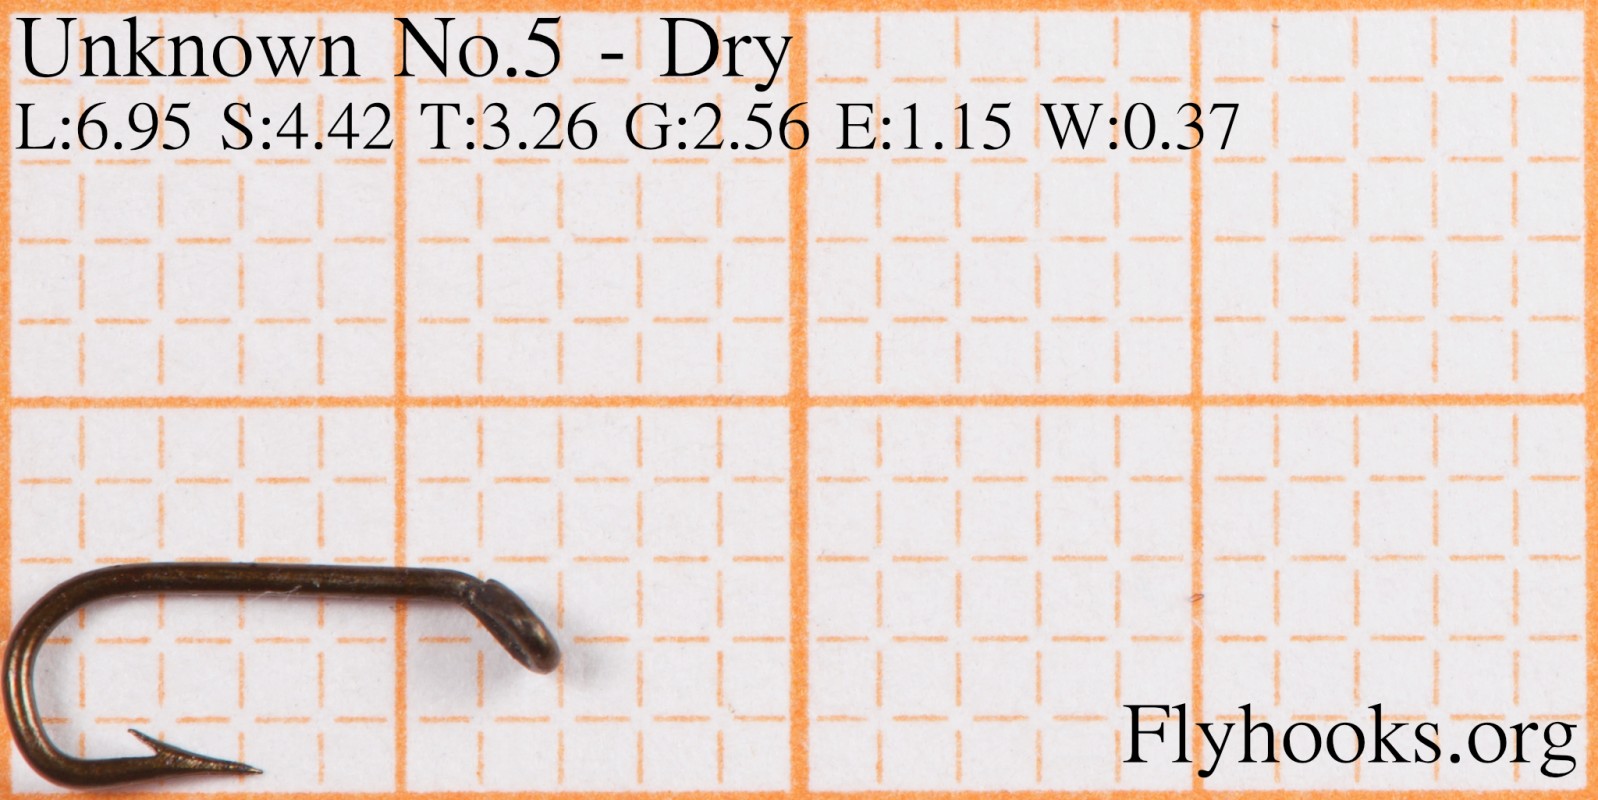 No.5 - Dry